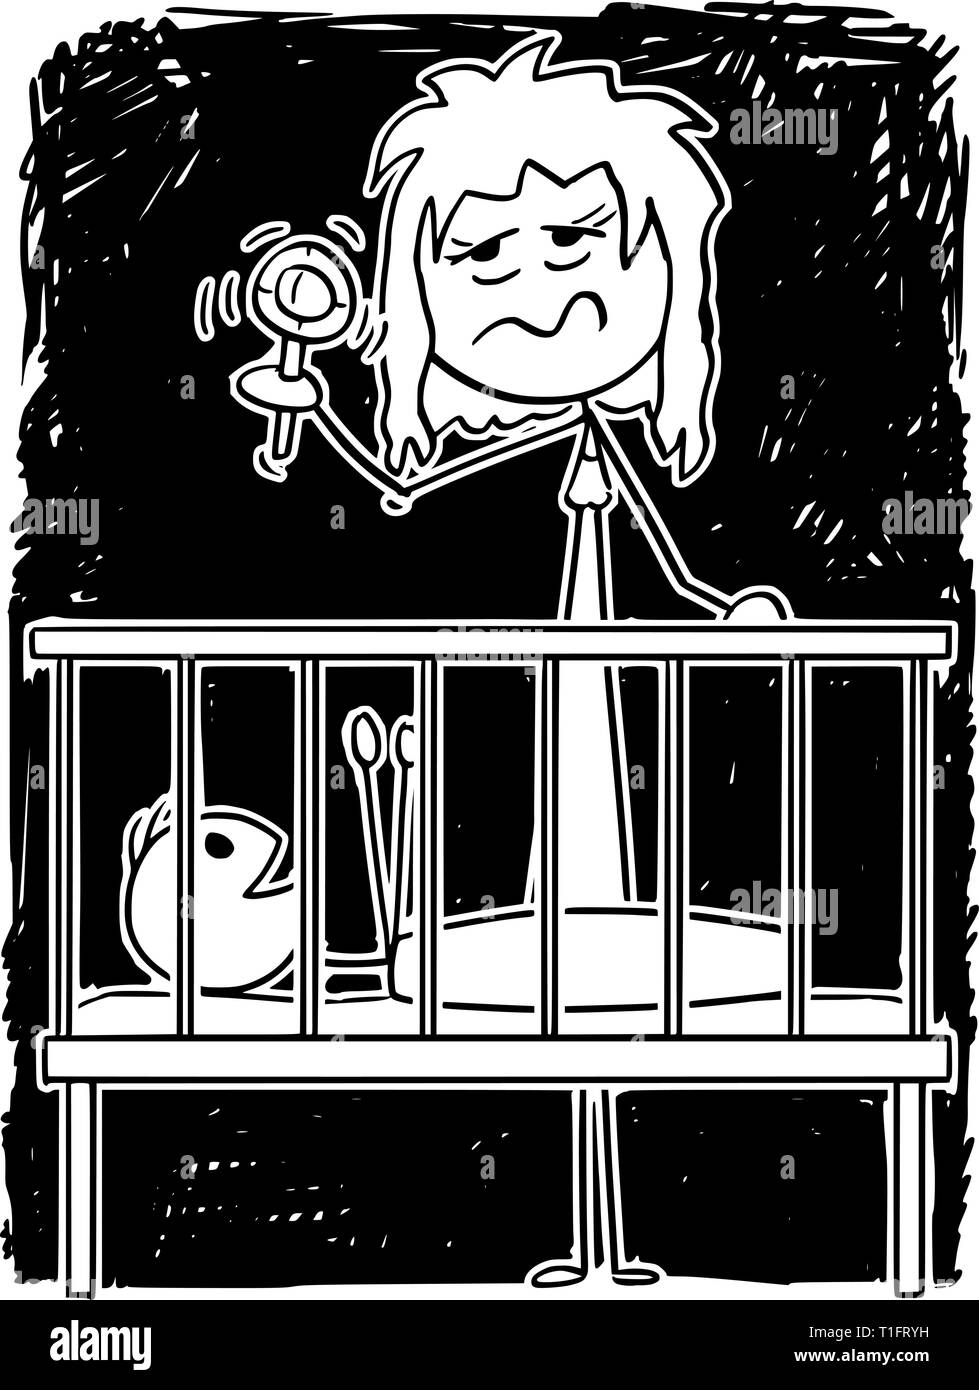 Cartoon Strichmännchen Zeichnung konzeptuelle Abbildung: müde Eltern oder Mutter unterhalten Baby im Kinderbett in der Nacht mit Rassel. Stock Vektor